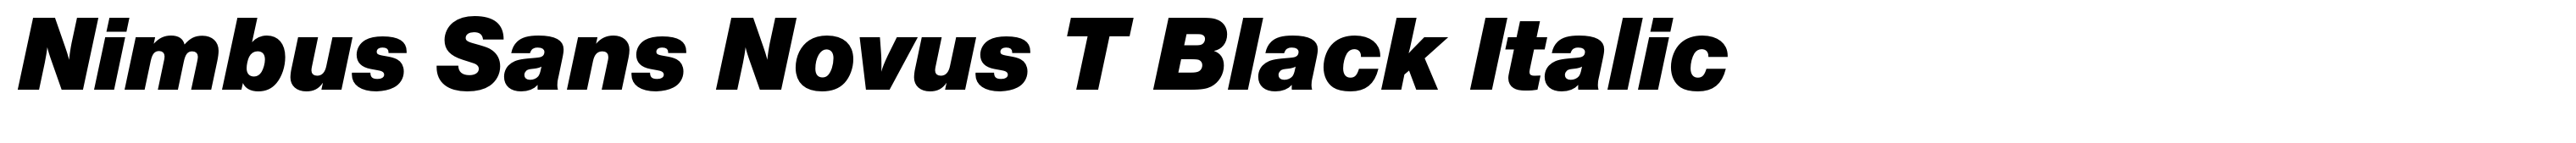 Nimbus Sans Novus T Black Italic